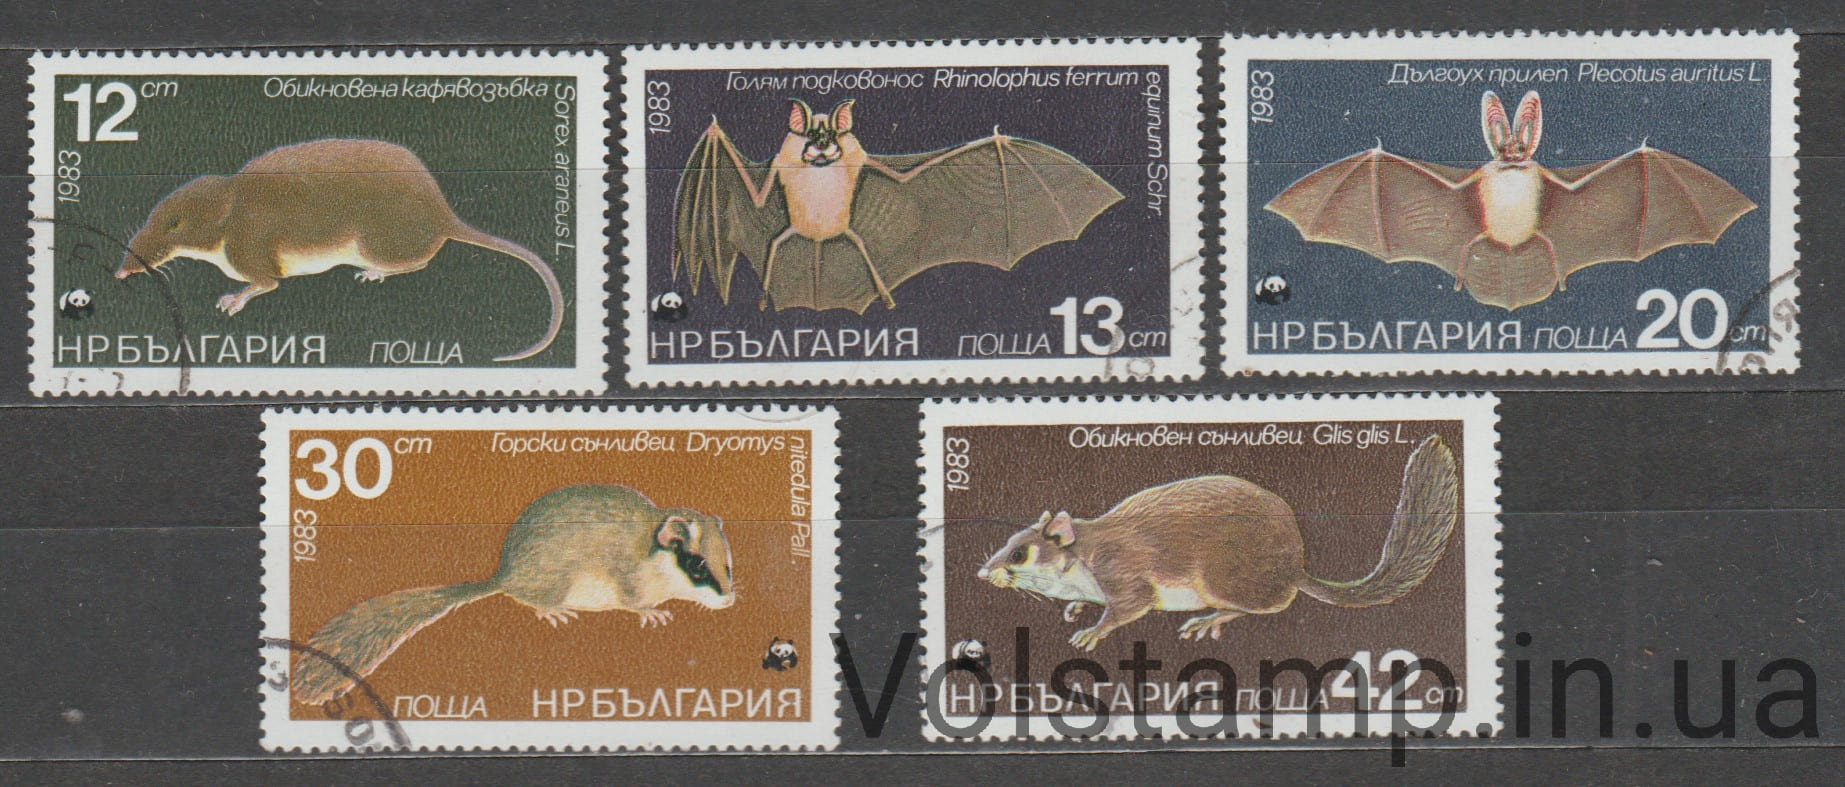 1983 Болгария серия марок (Фауна, грызуны, летучие мыши) Гашеные №3236-3240